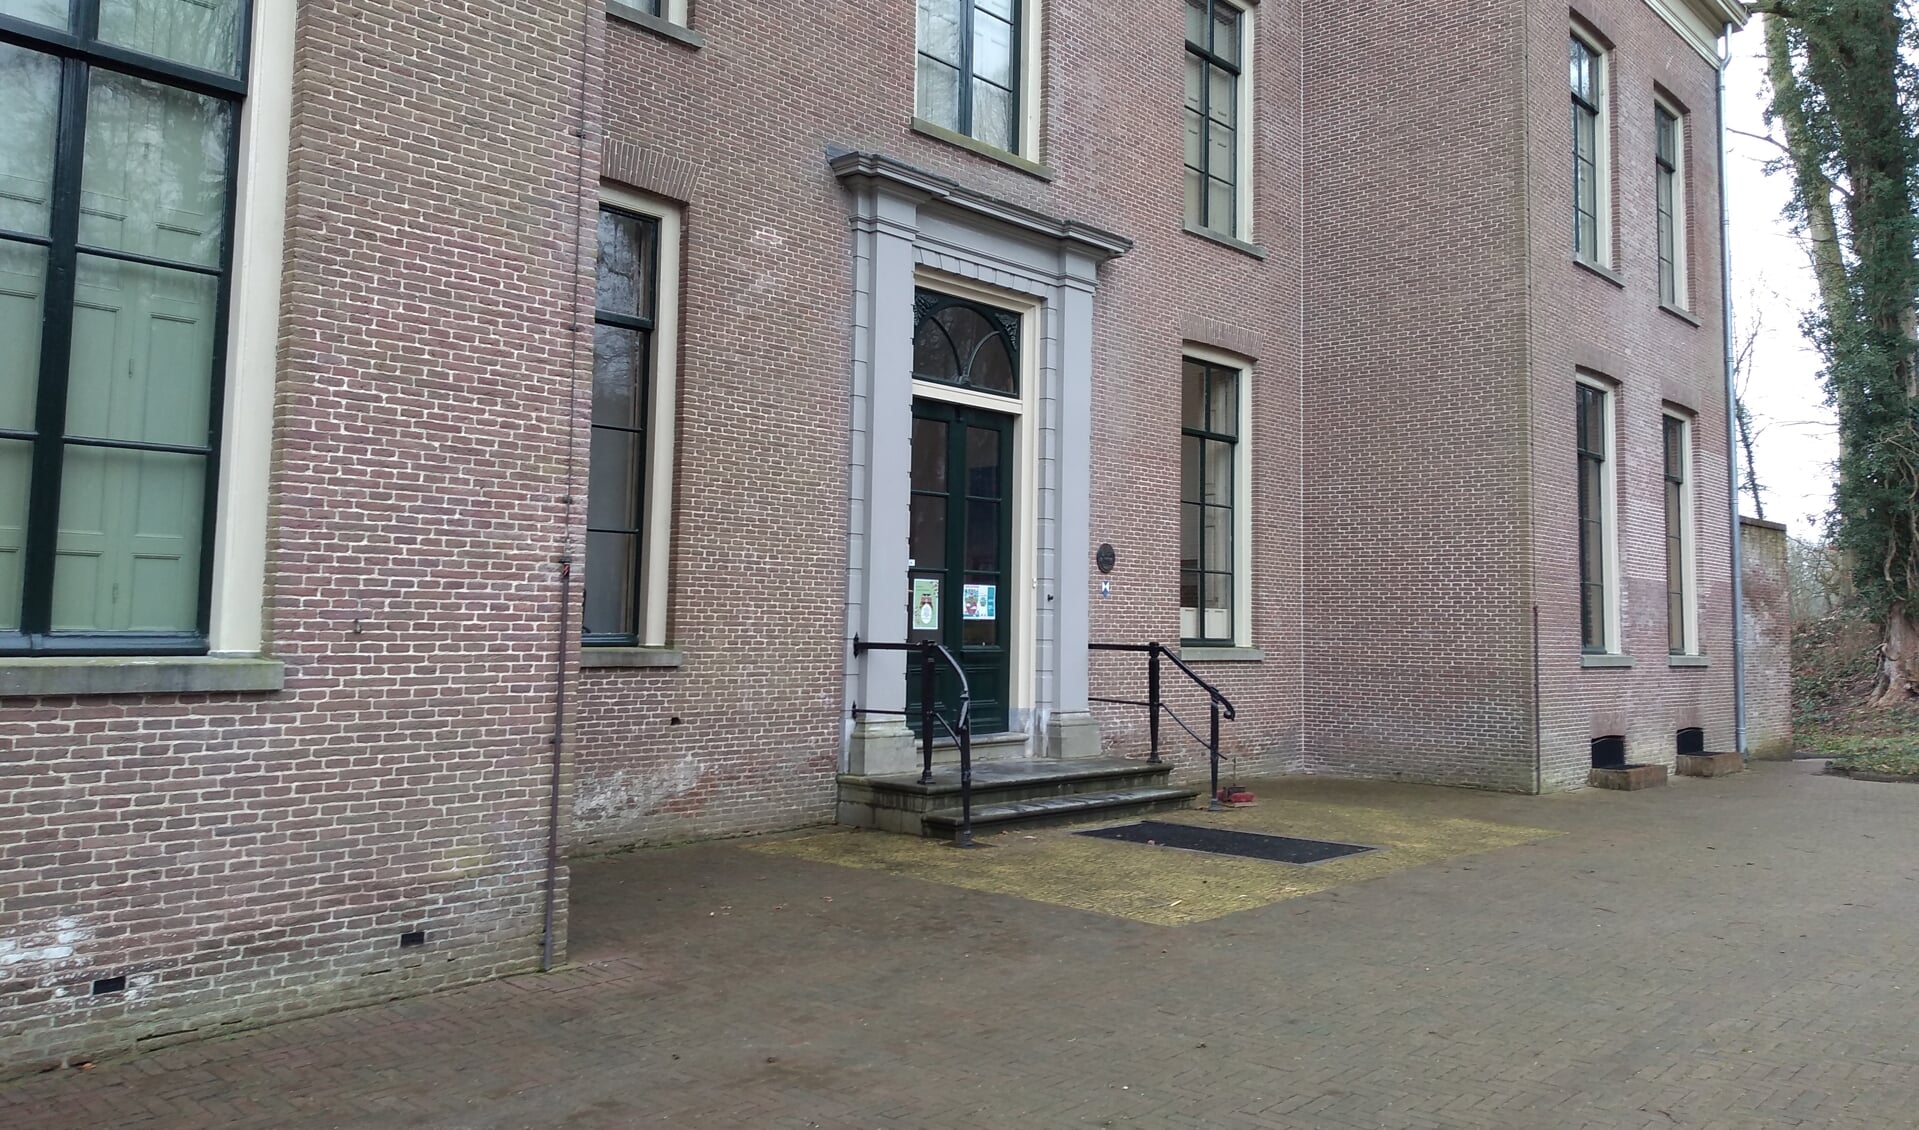 Landhuis Oud Amelisweerd, blijft de deur in de toekomst open voor publiek?